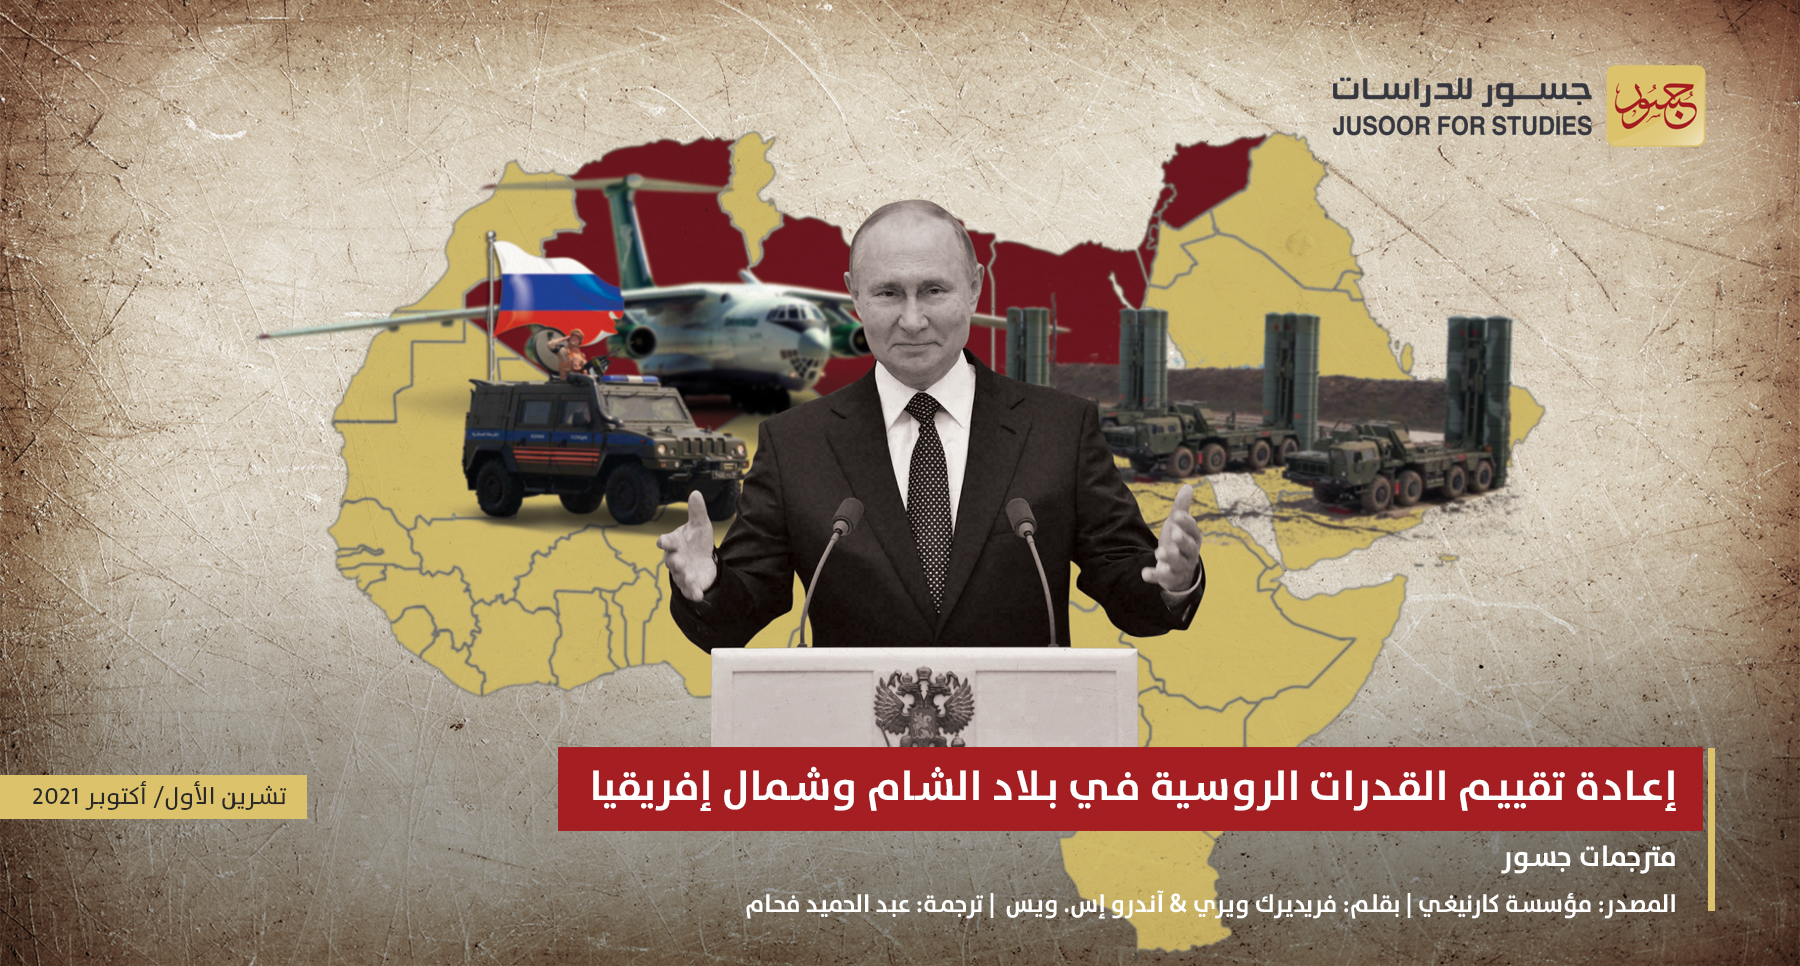 إعادة تقييم القدرات الروسية في بلاد الشام وشمال إفريقيا